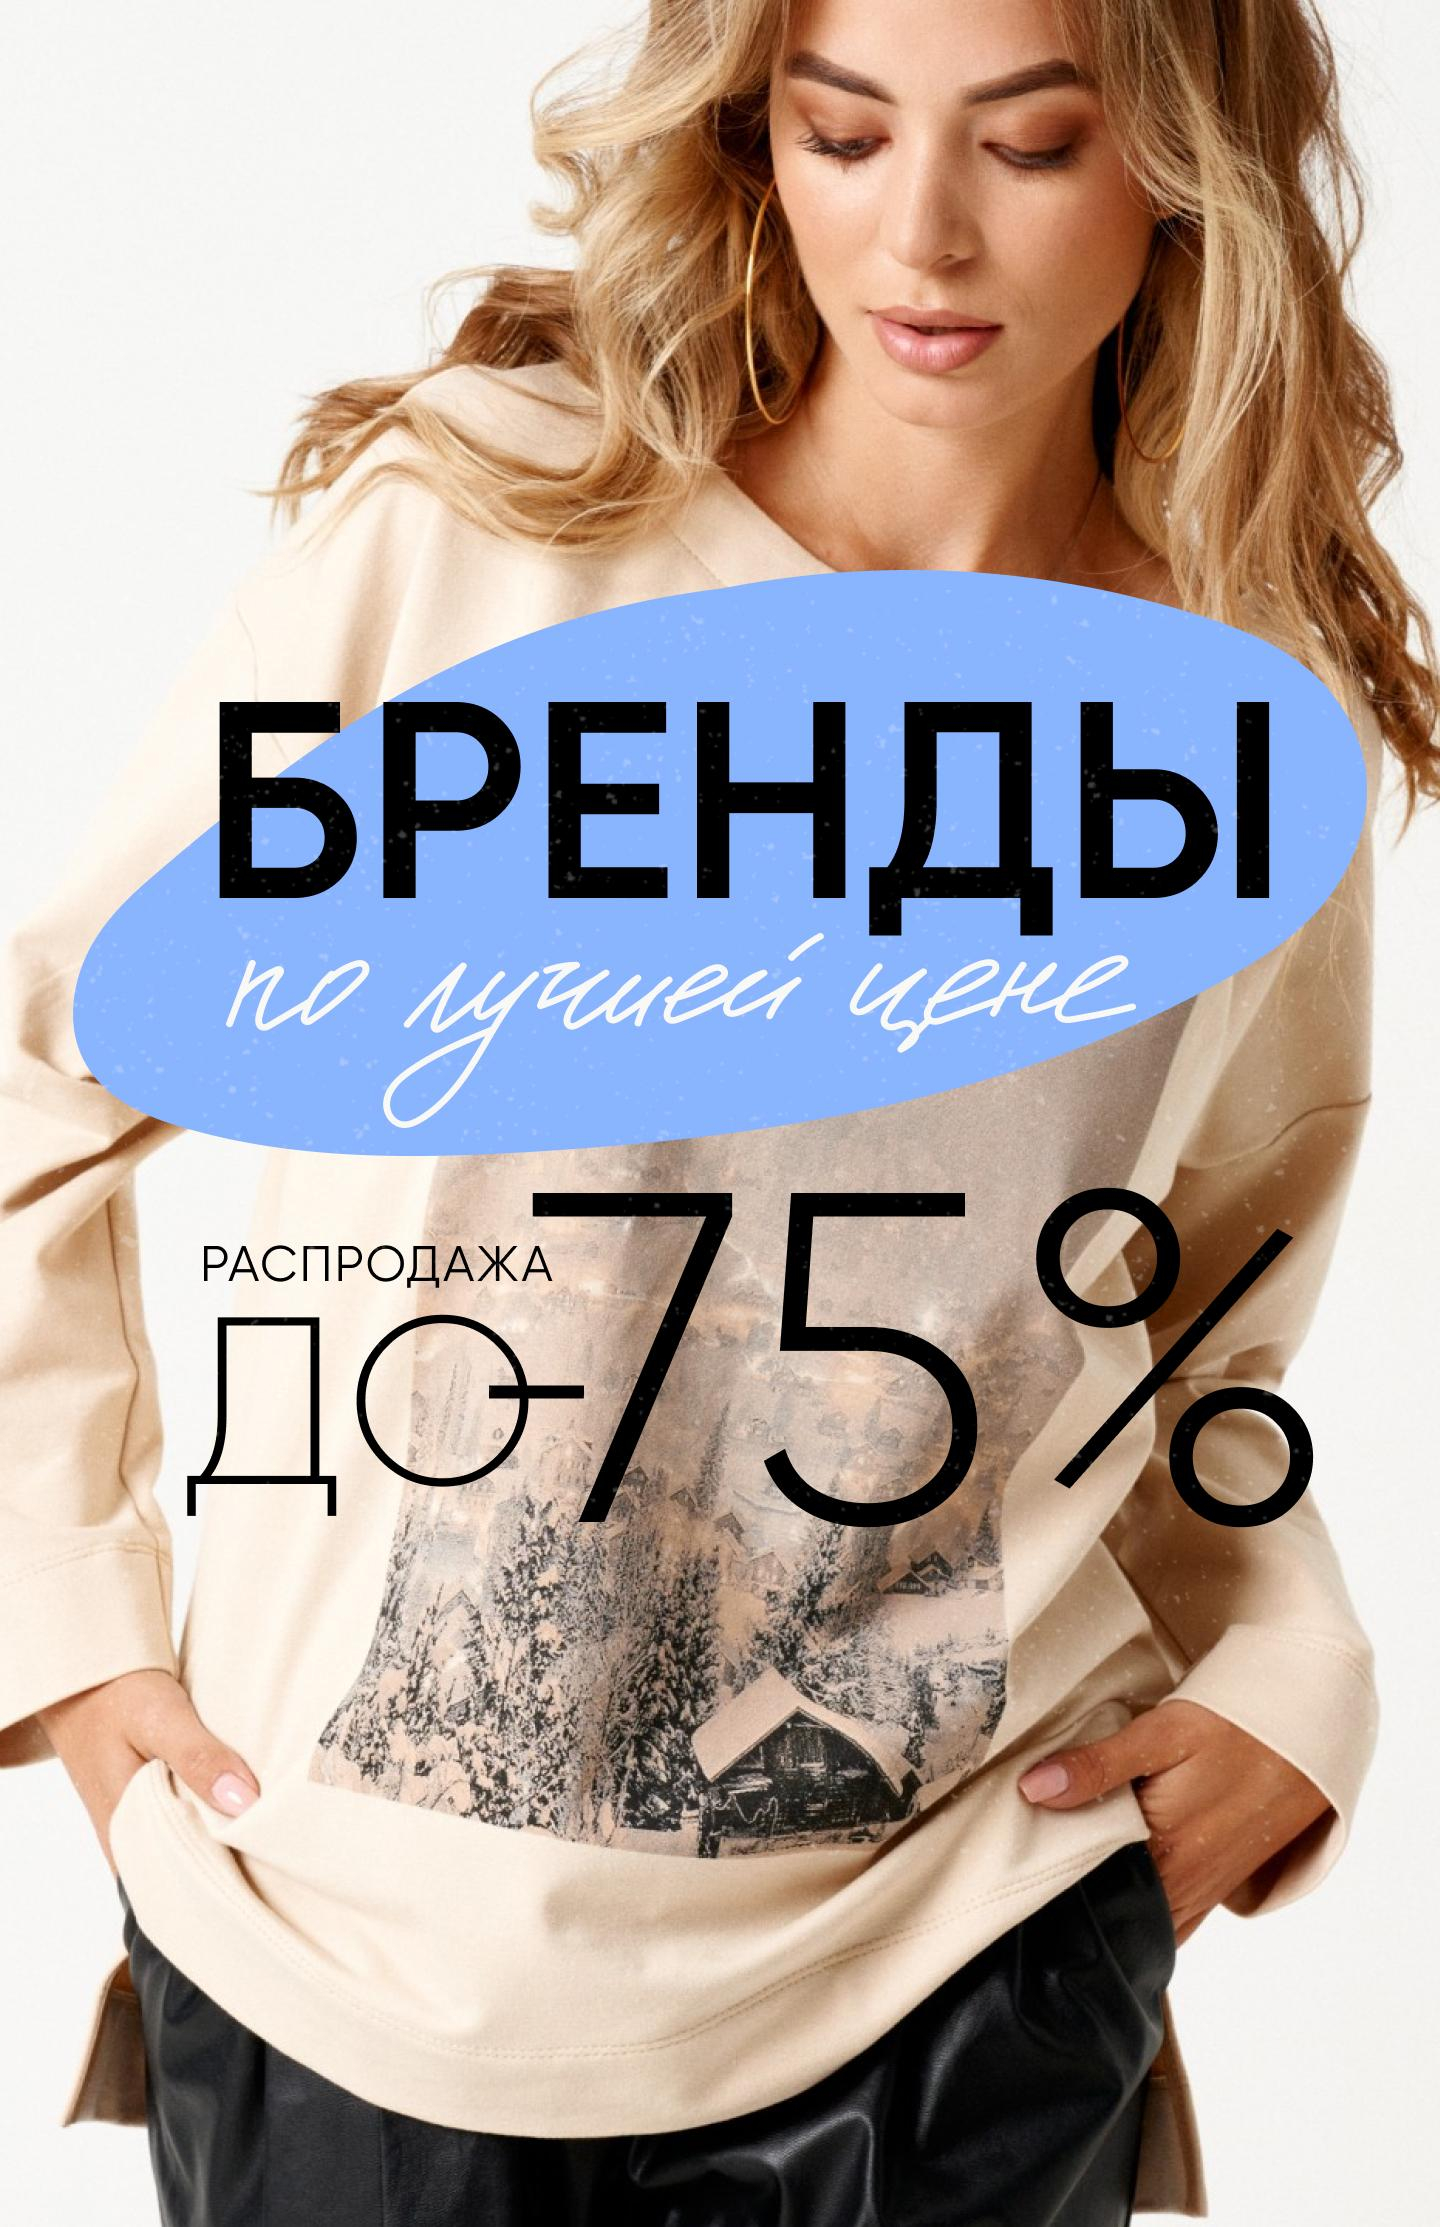 Bellavka Интернет Магазин Белорусской Женской Одежды